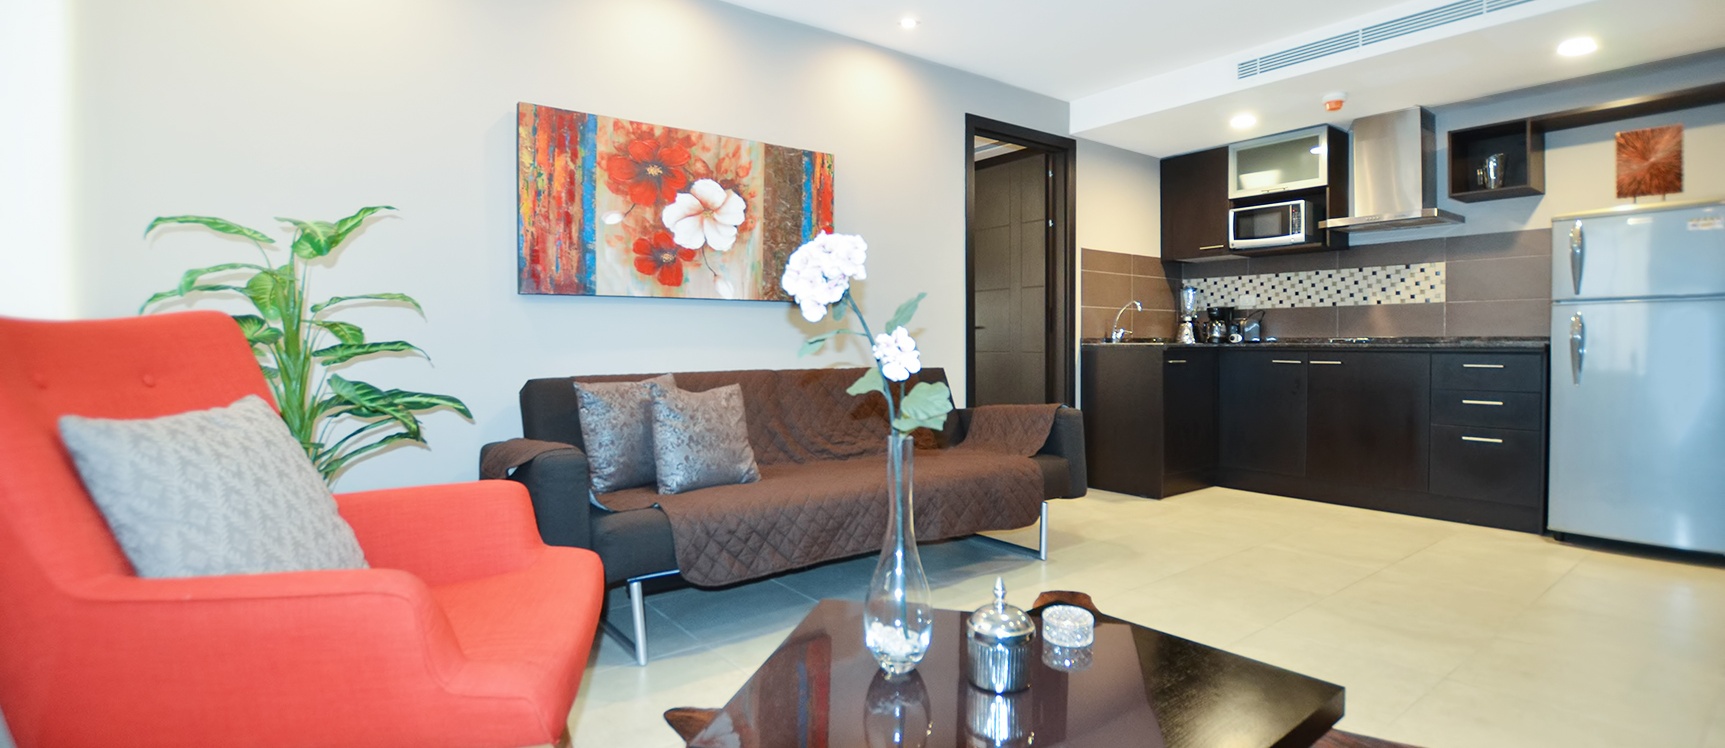 GeoBienes - Suite en alquiler en Bellini II sector centro de Guayaquil - Plusvalia Guayaquil Casas de venta y alquiler Inmobiliaria Ecuador